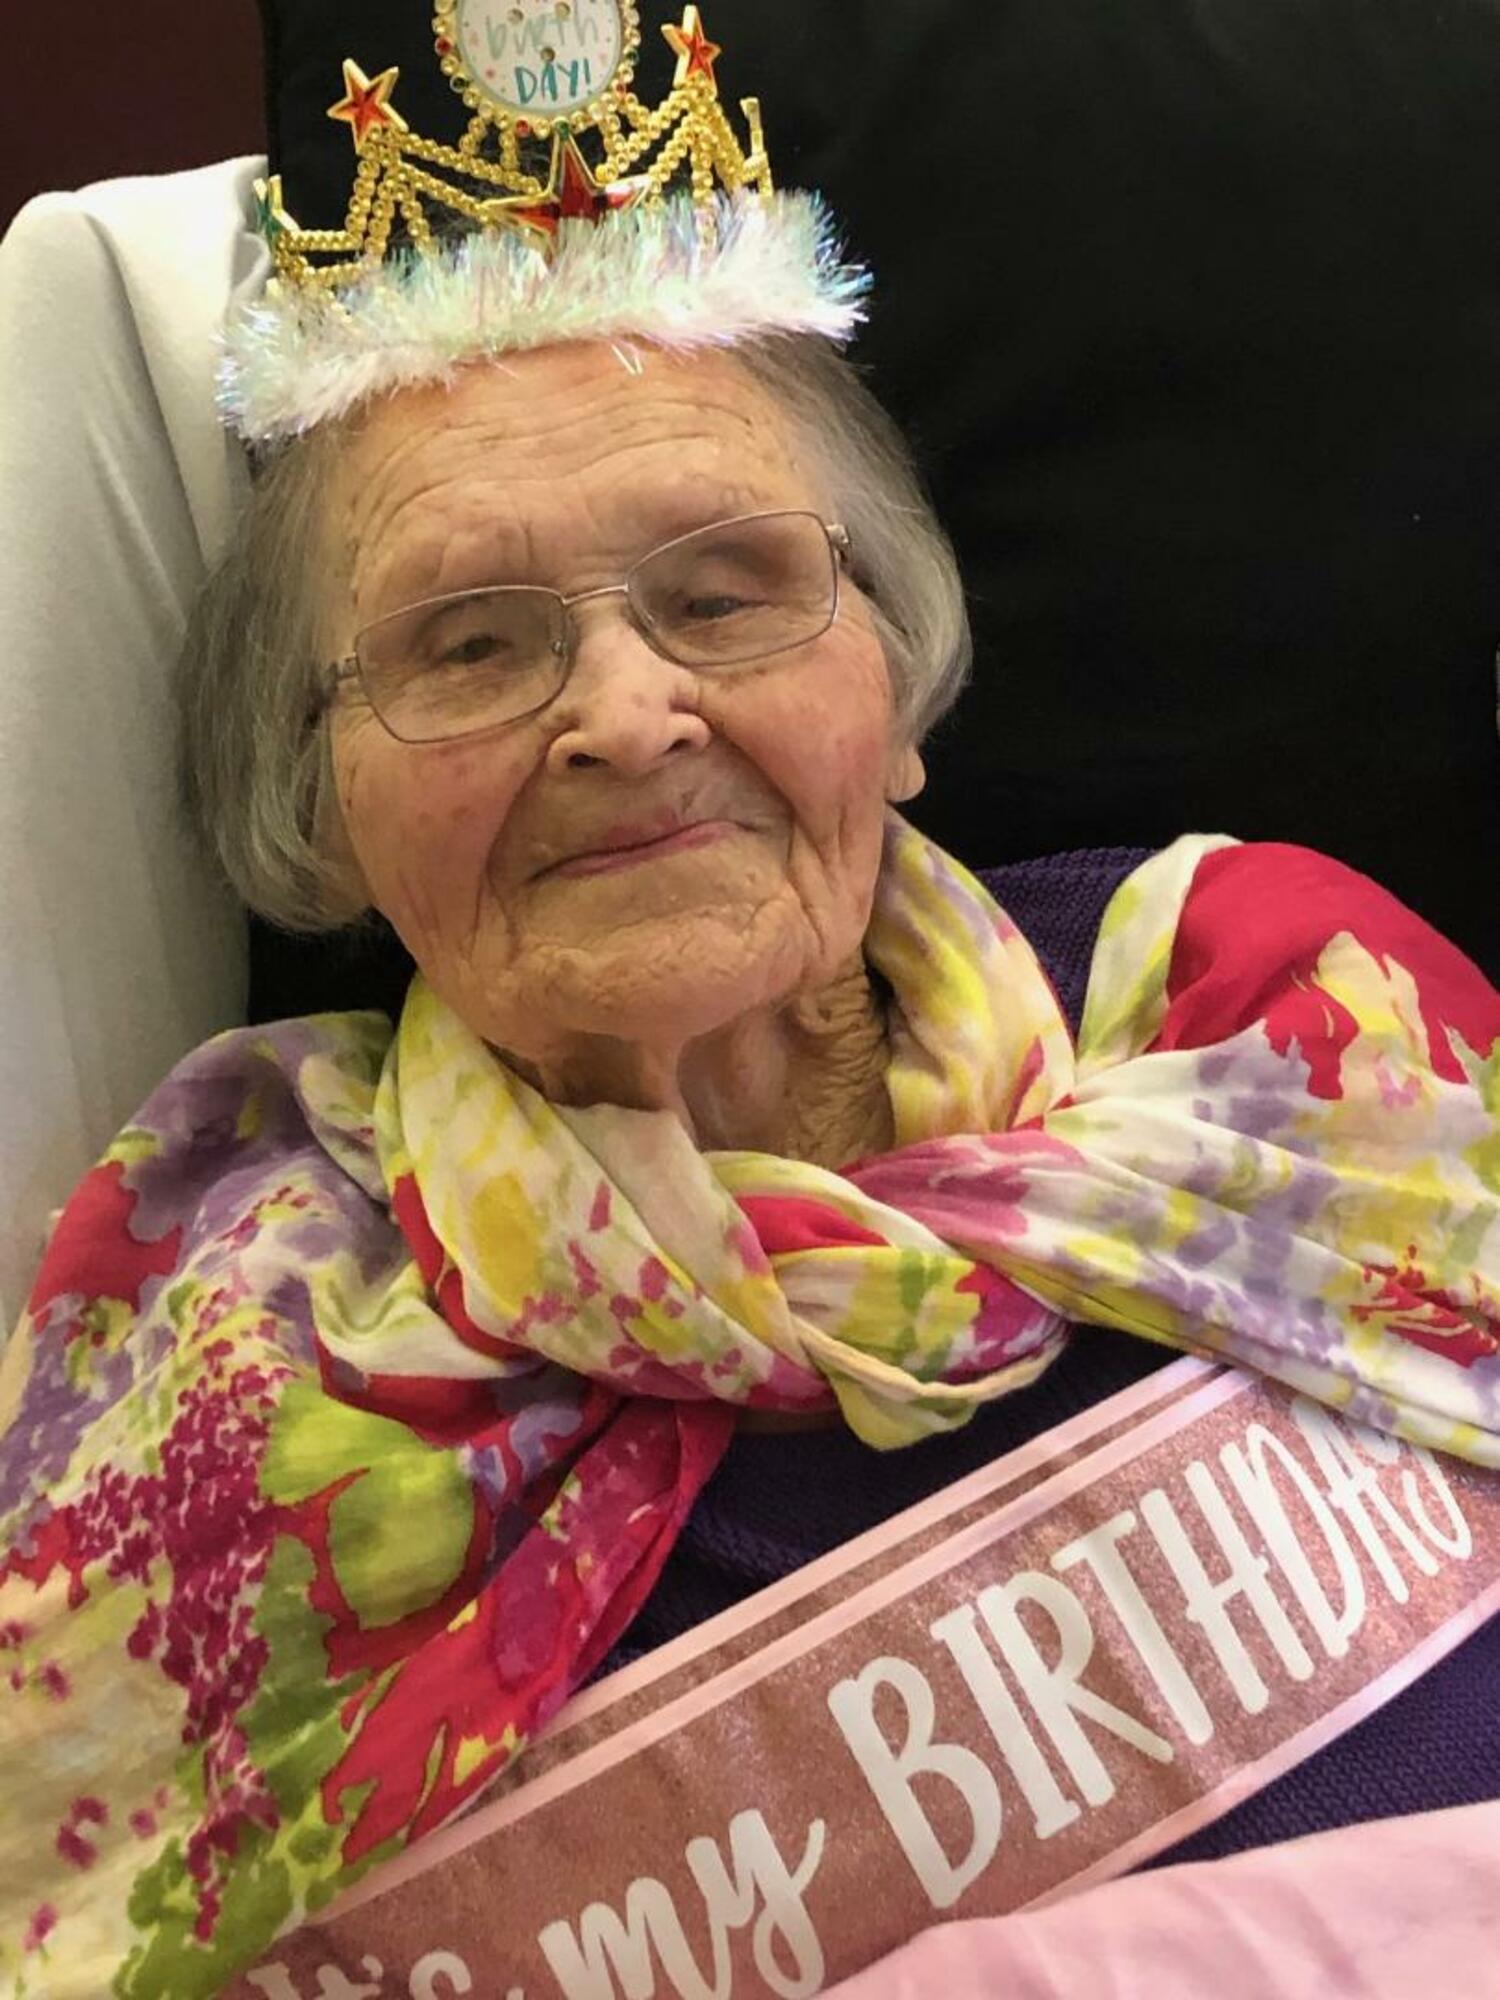 Dorothy celebrating her 106th birthday.